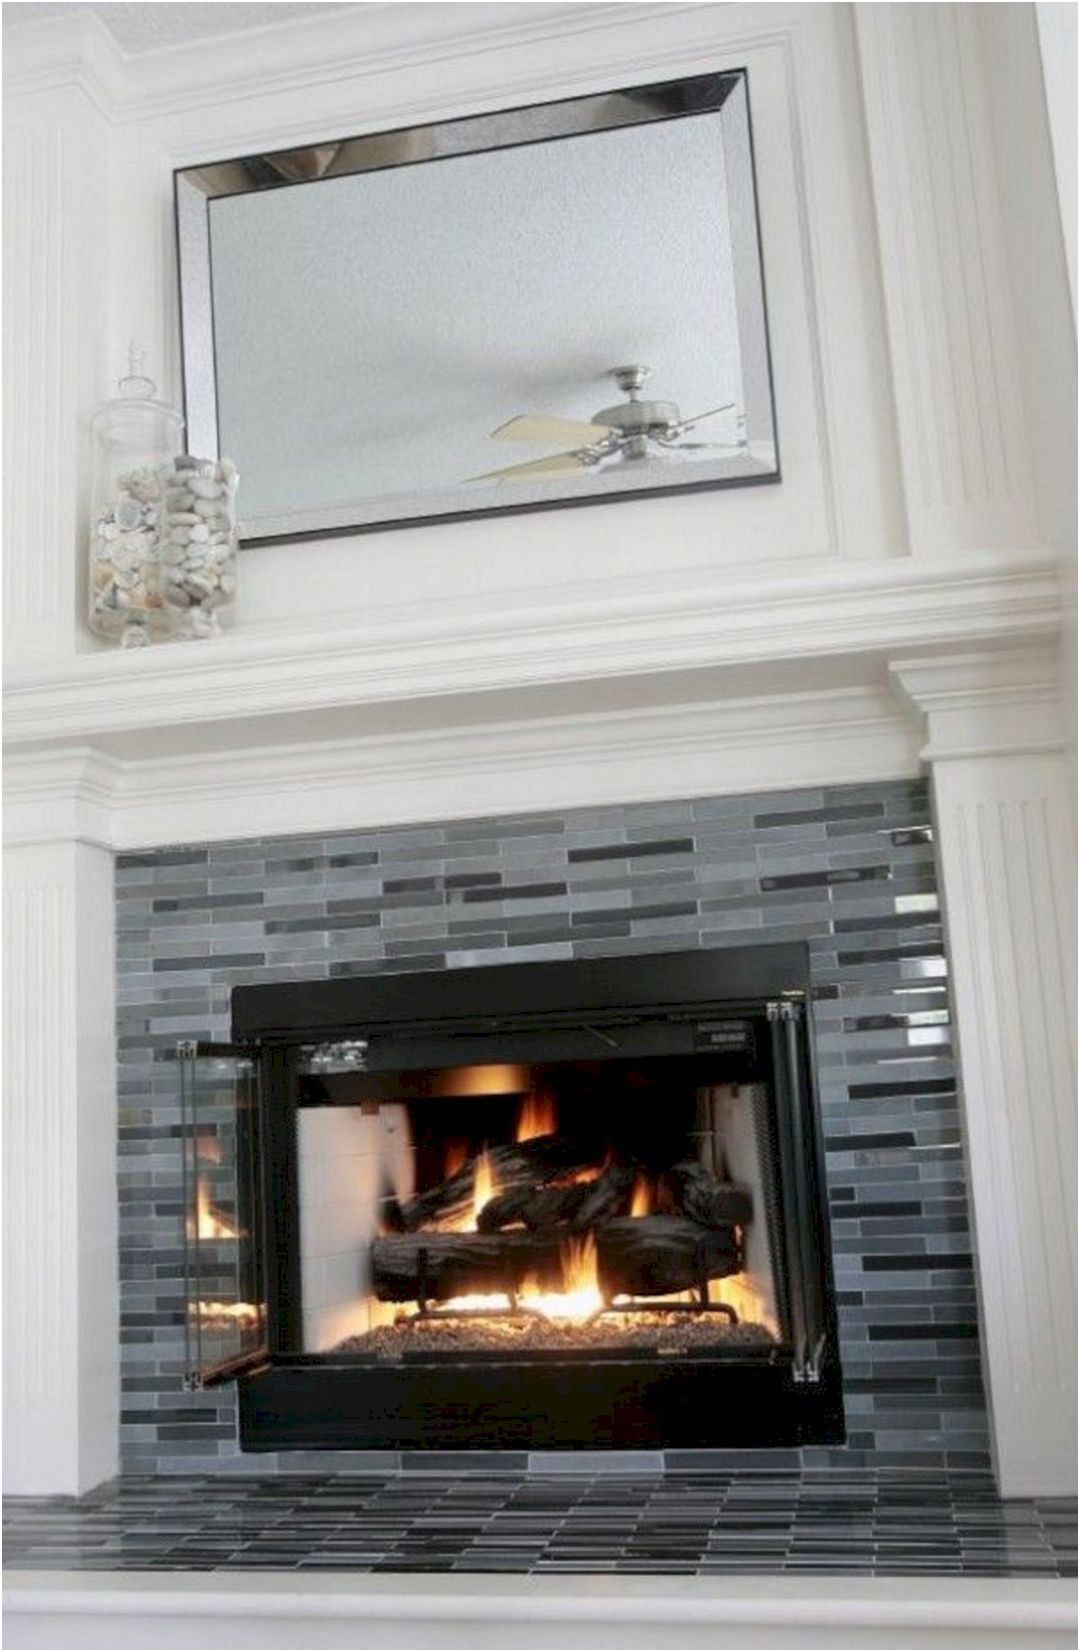 Best Of Fireplace Tile Idea